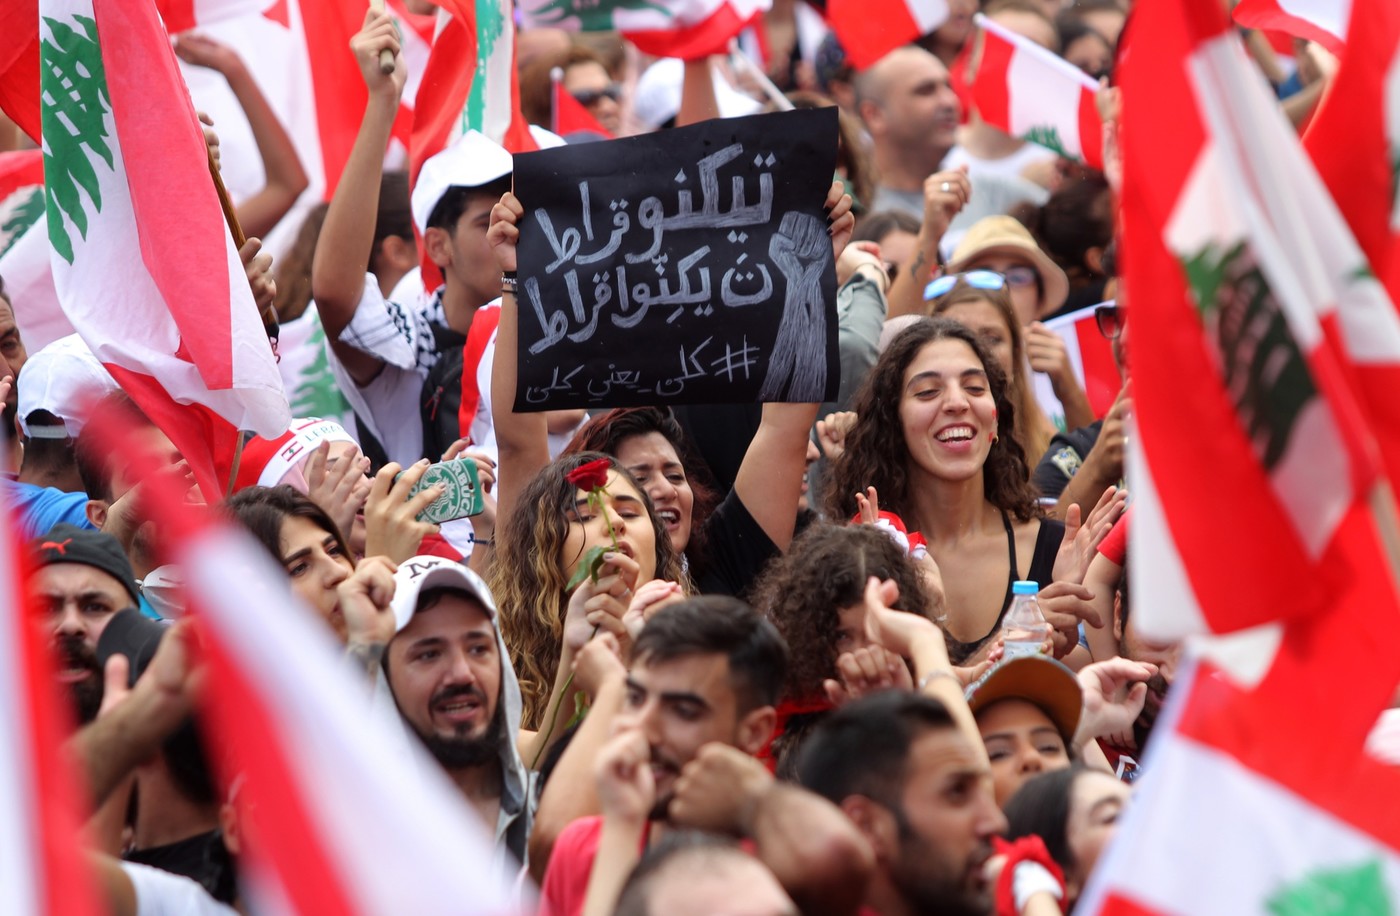 Liban: le gouvernement se penche sur des réformes, la rue reste en colère